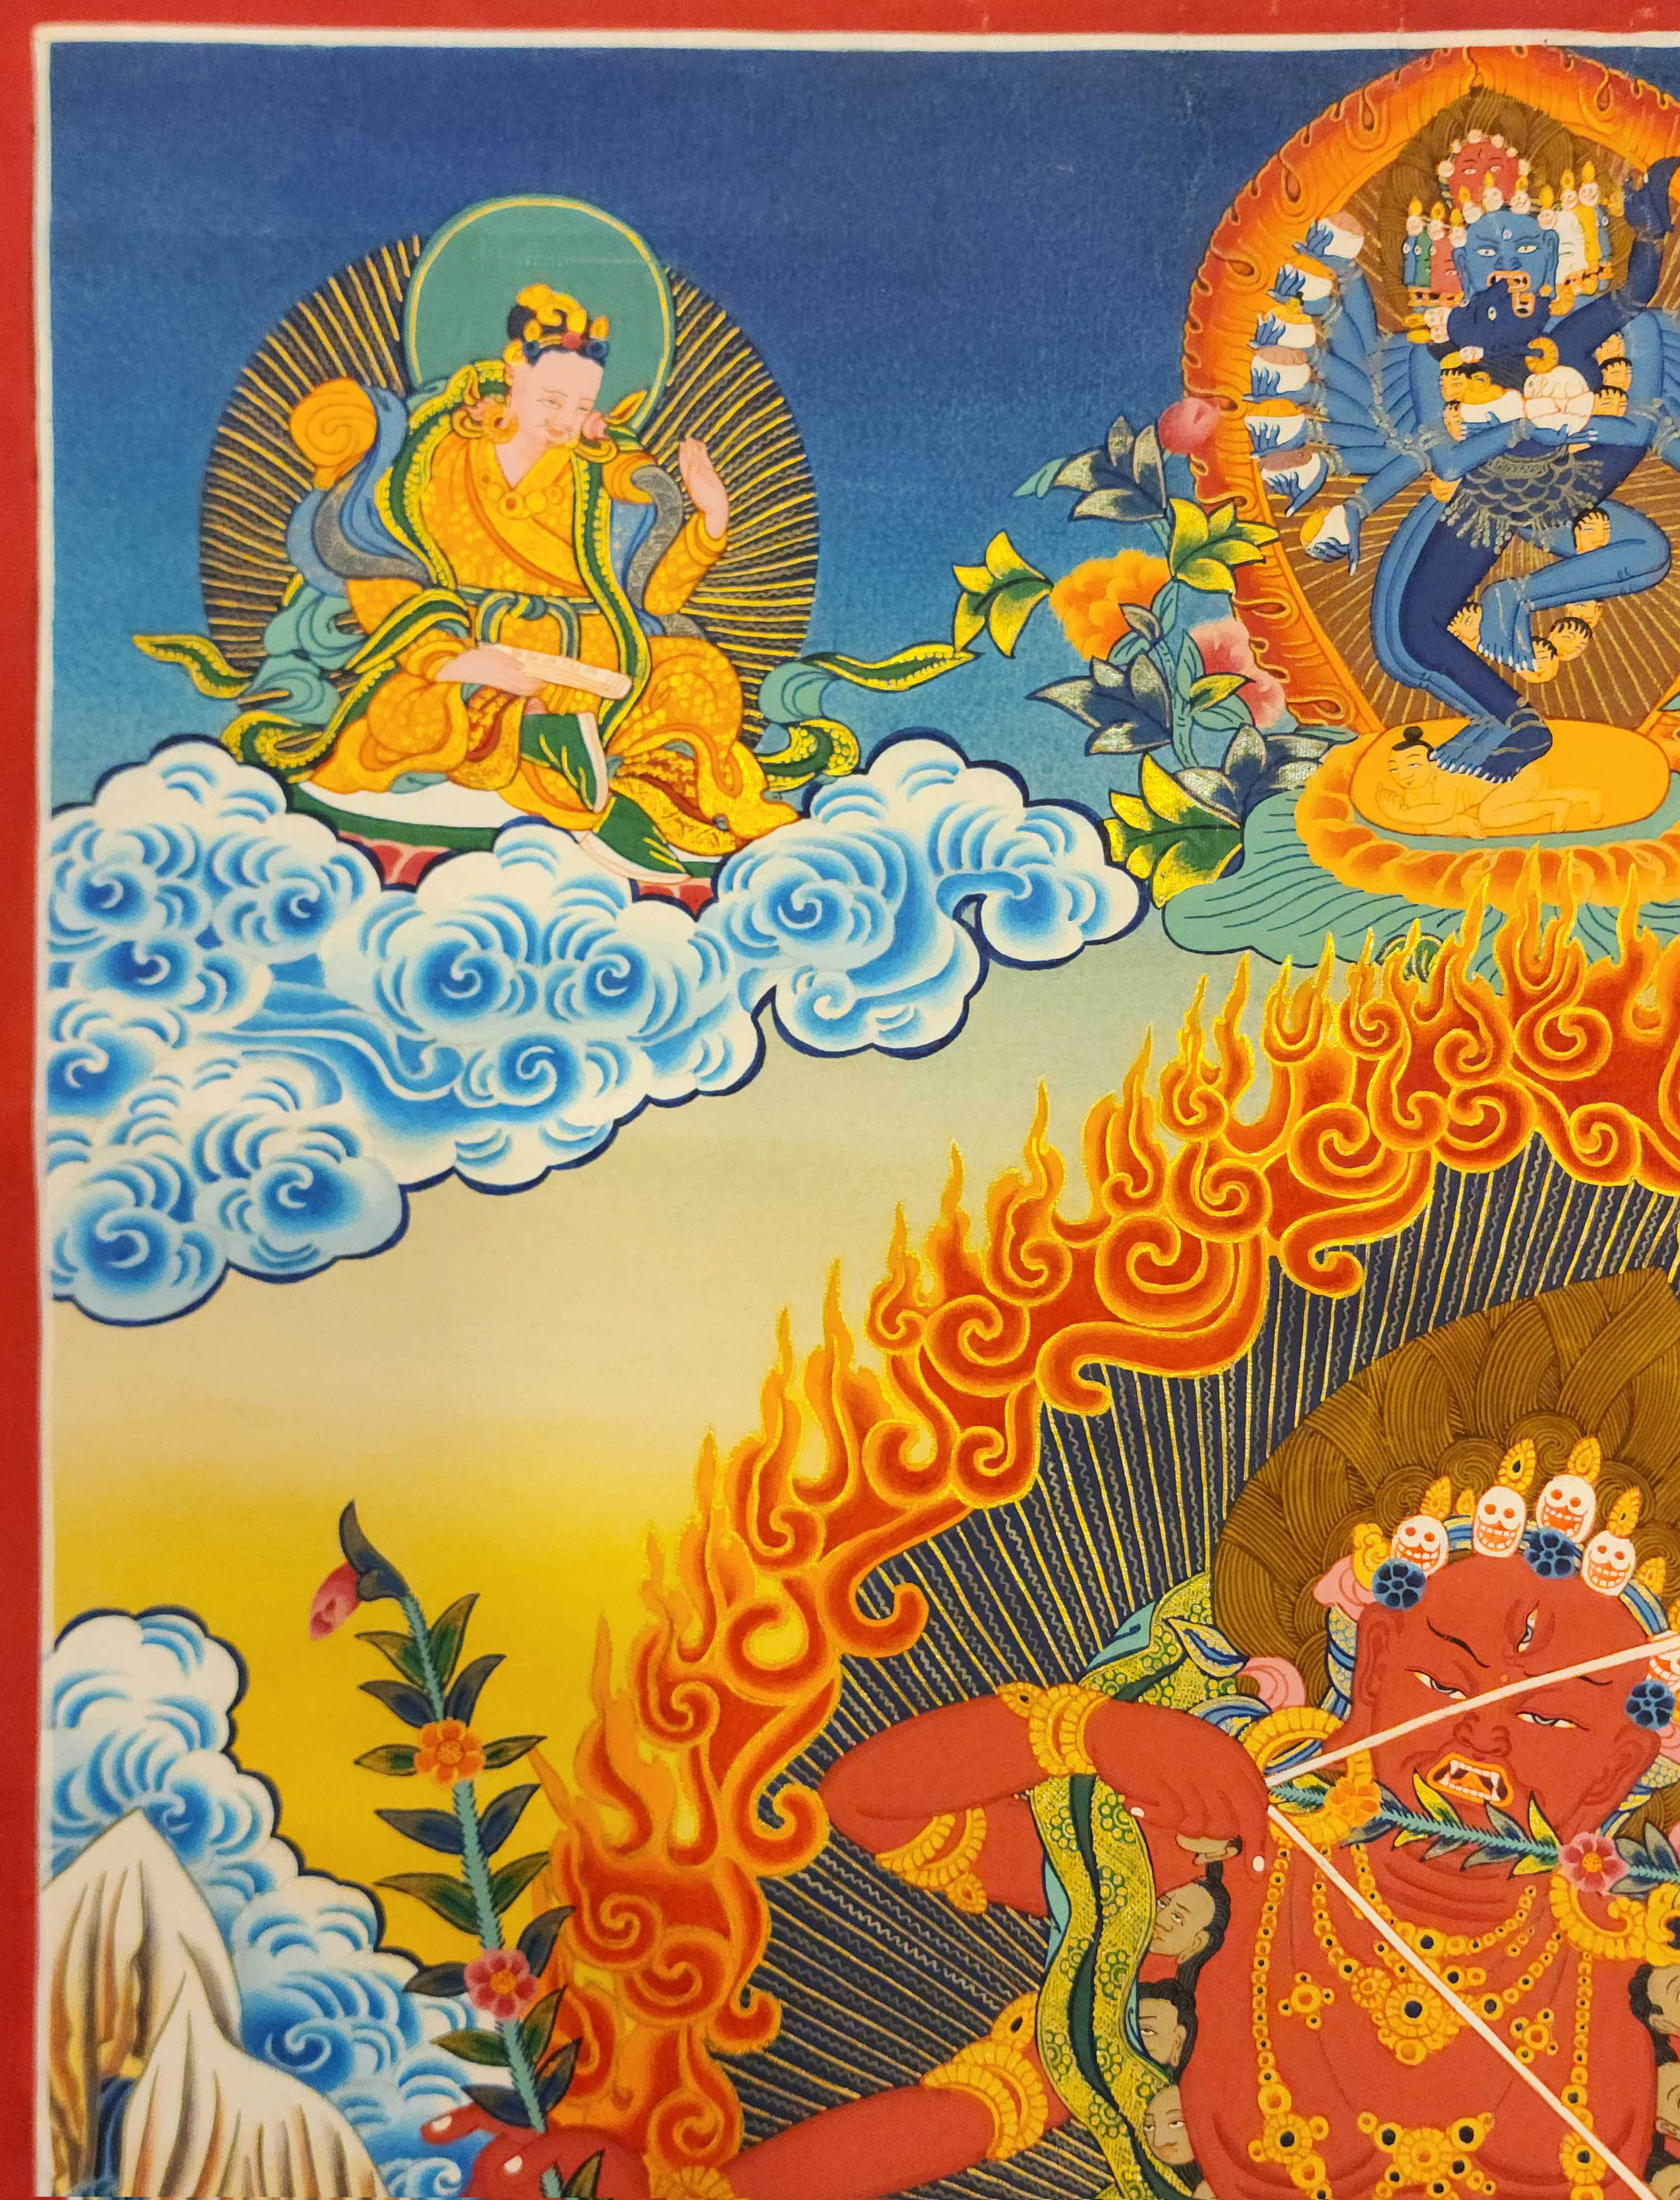 Kurukulla, Buddhist Handmade Thangka Painting, real Gold, Rigjeyma, Pema Khandro, Wangyi Lhamo, Red Tara